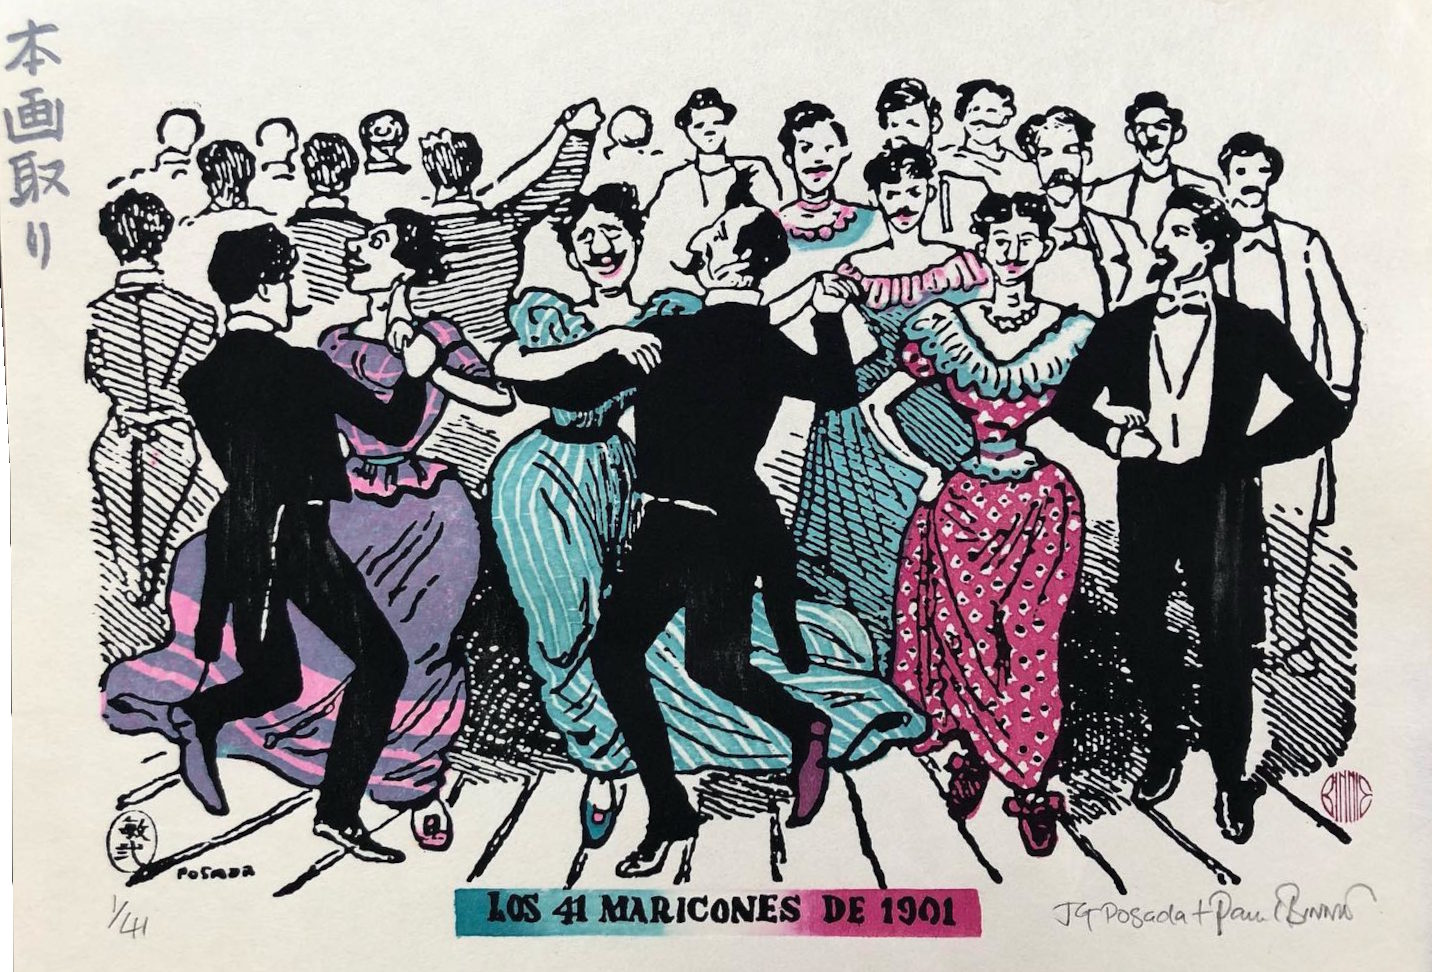 Paul Binnie “Los 41 Maricones de 1901” artwork